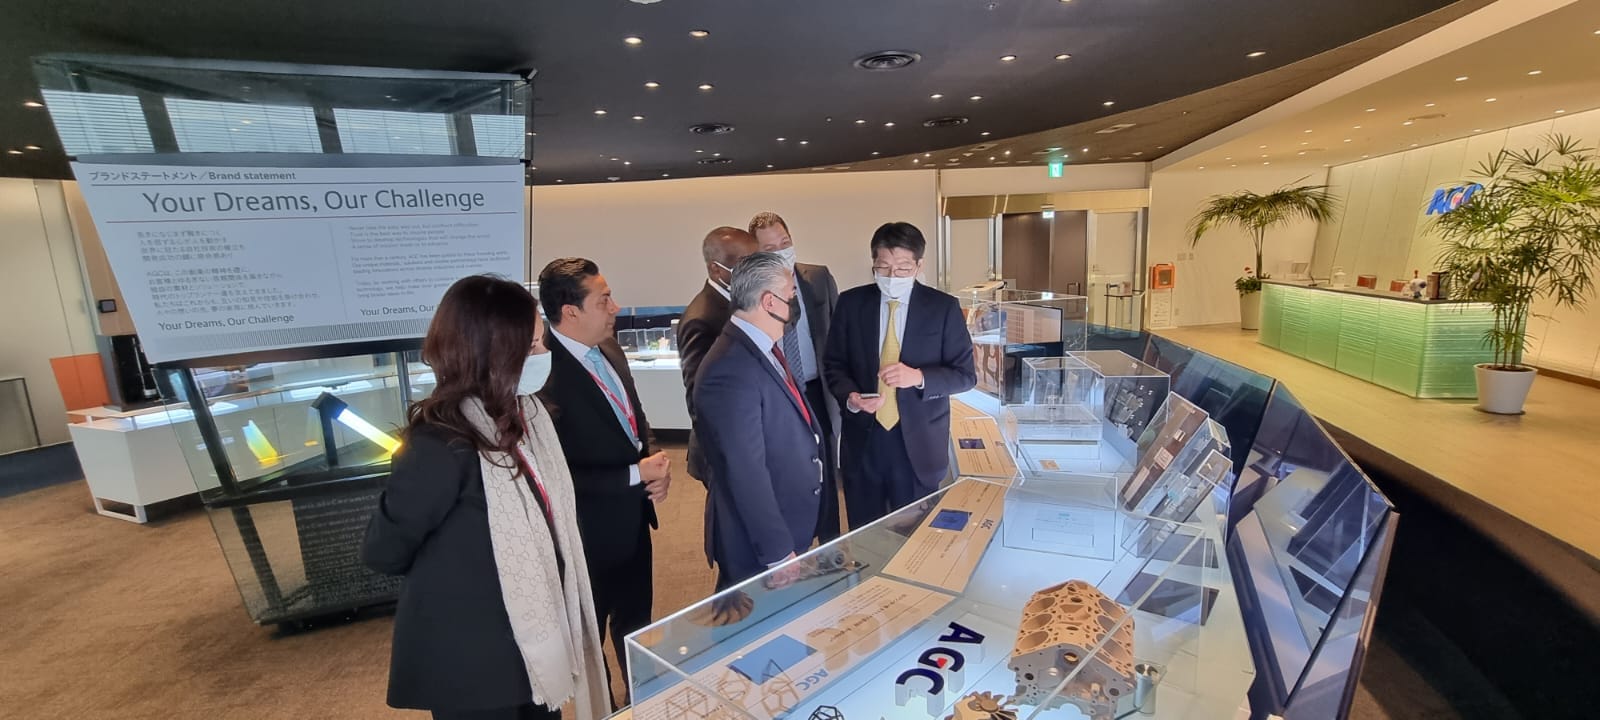 رئيس اقتصادية قناة السويس وليد جمال الدين مع مستثمرين يابانيين